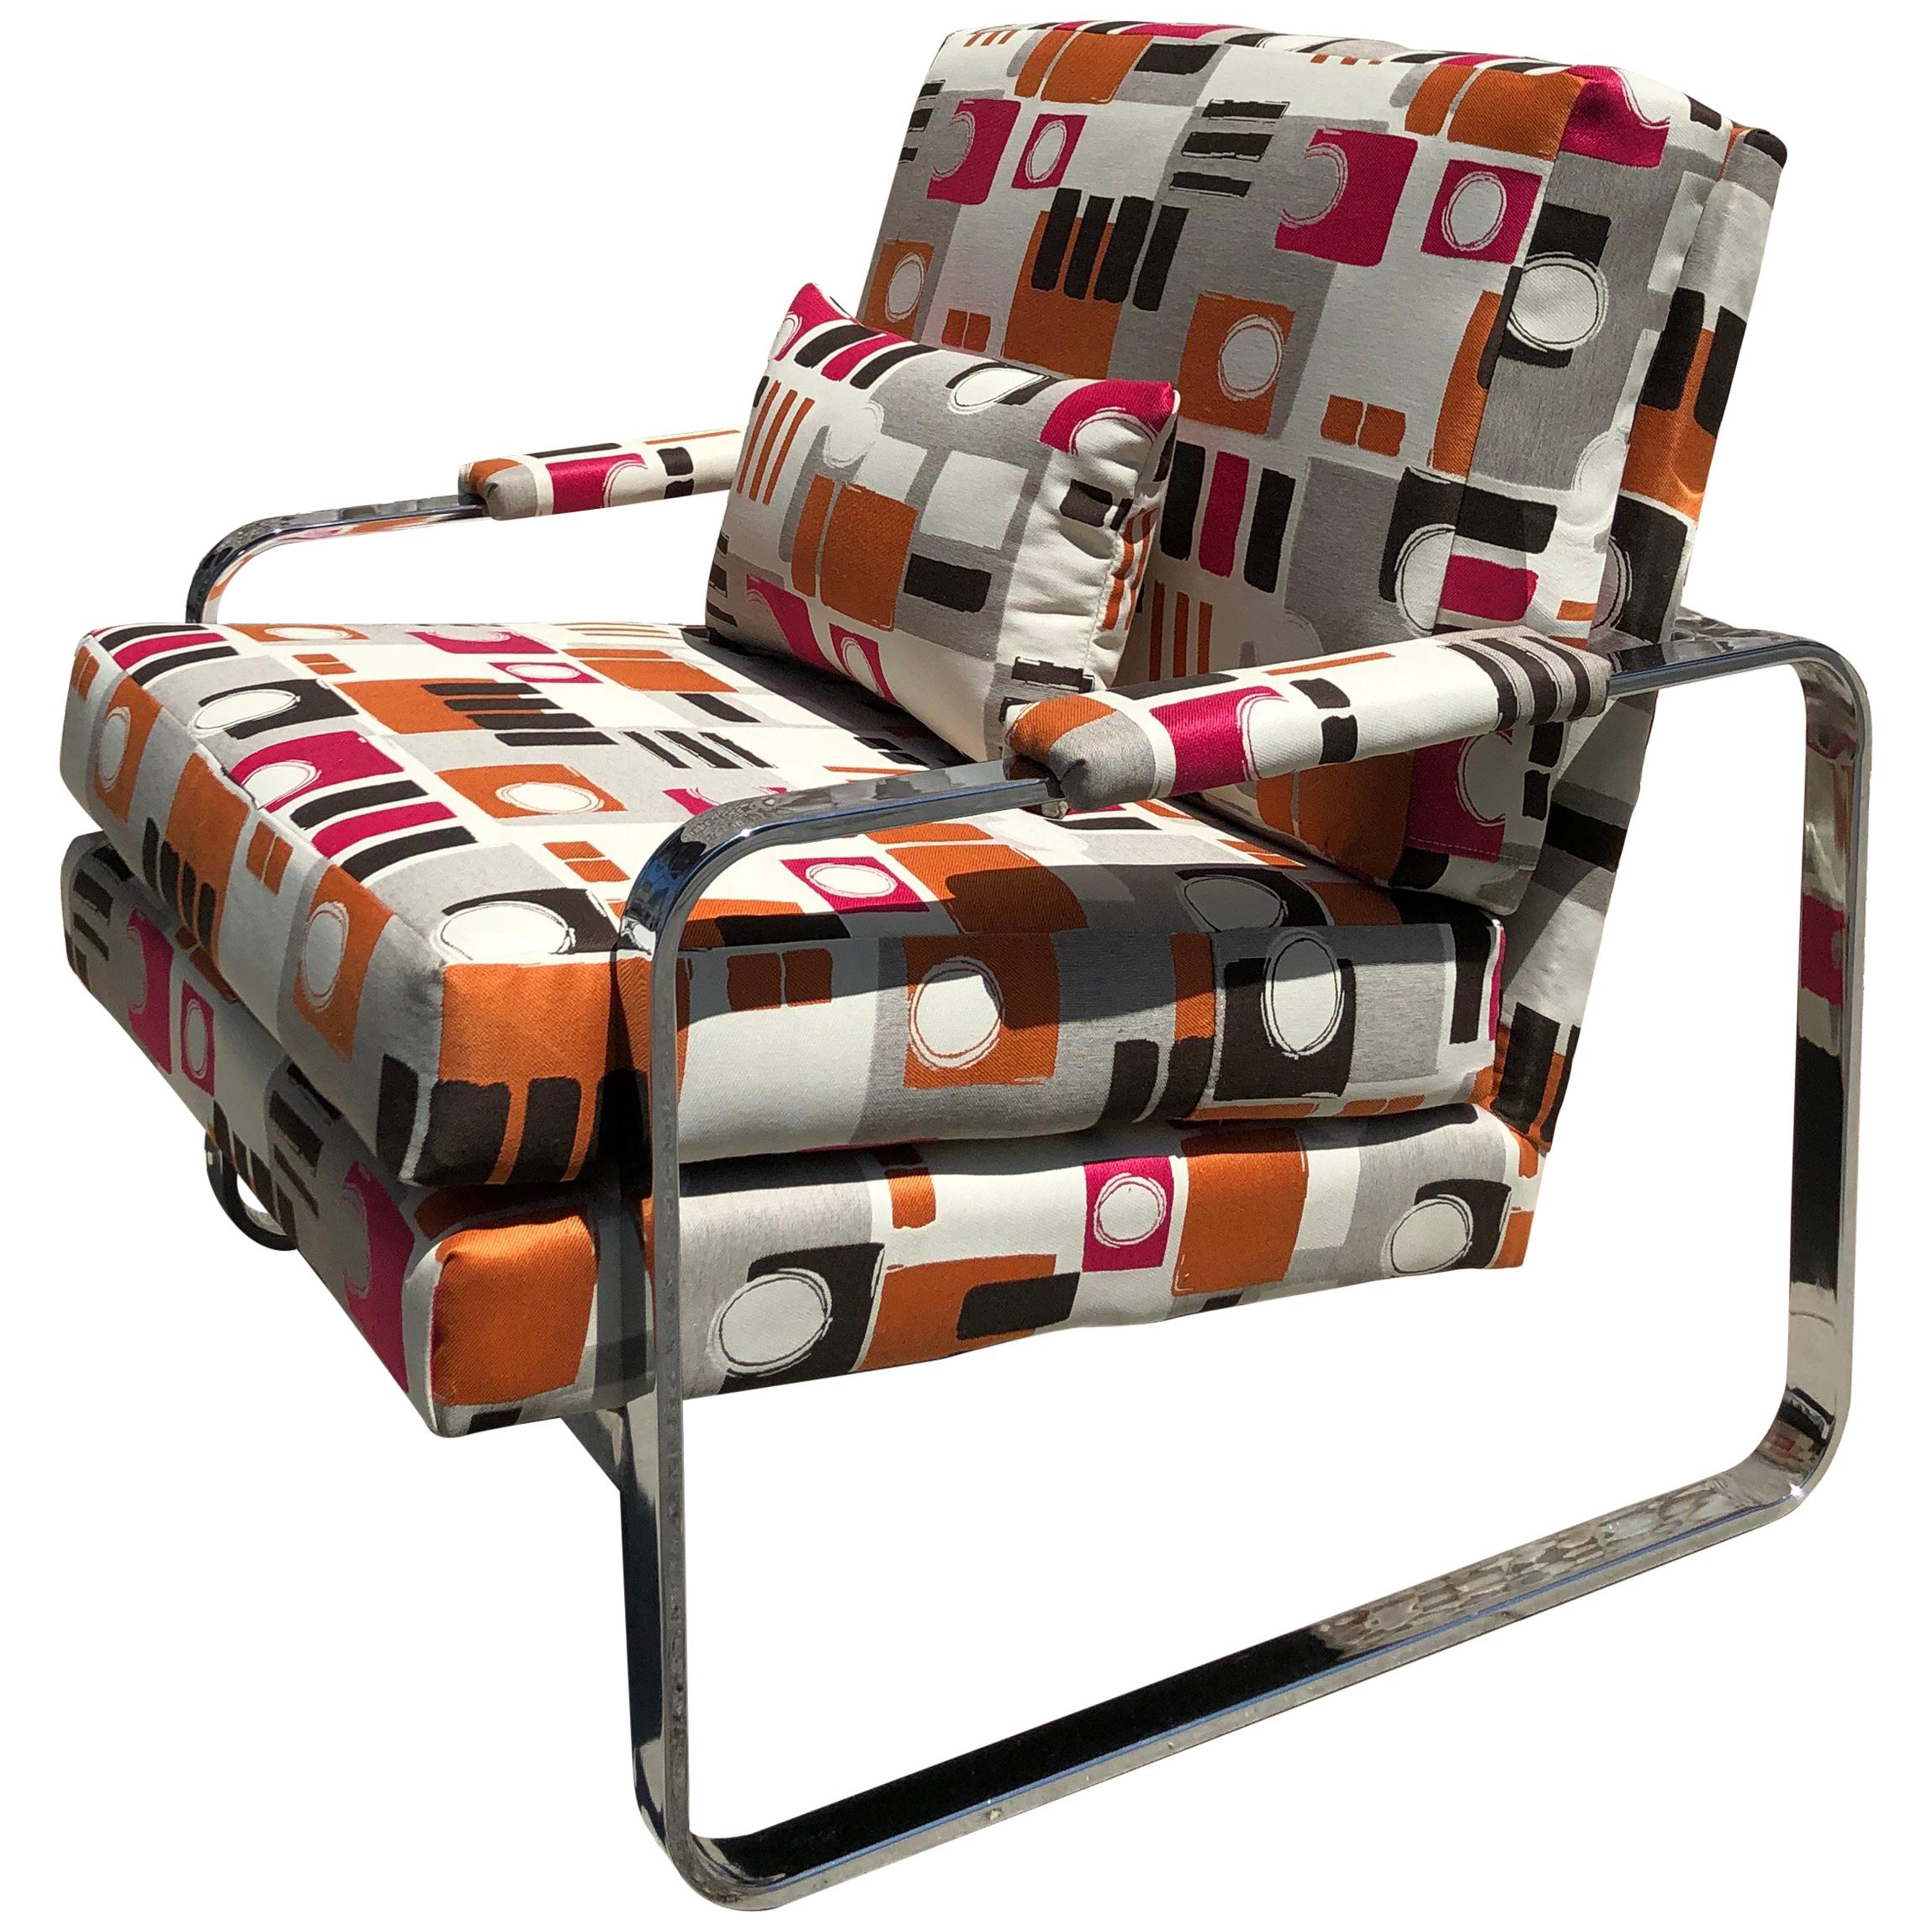 1970s Modern Chrome Club Chair